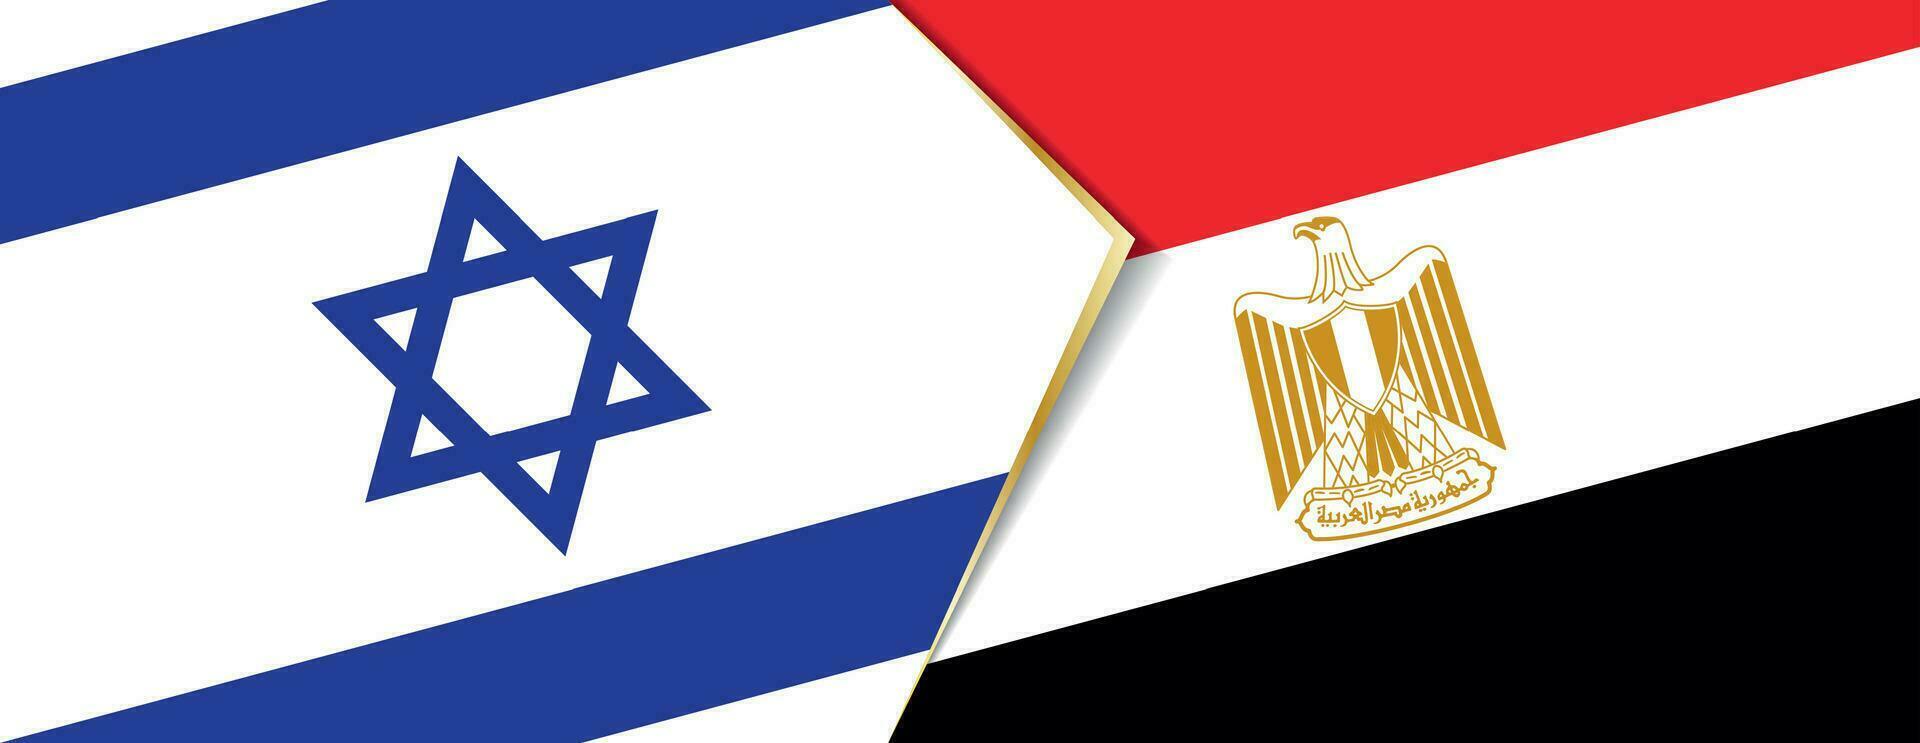 Israel och egypten flaggor, två vektor flaggor.